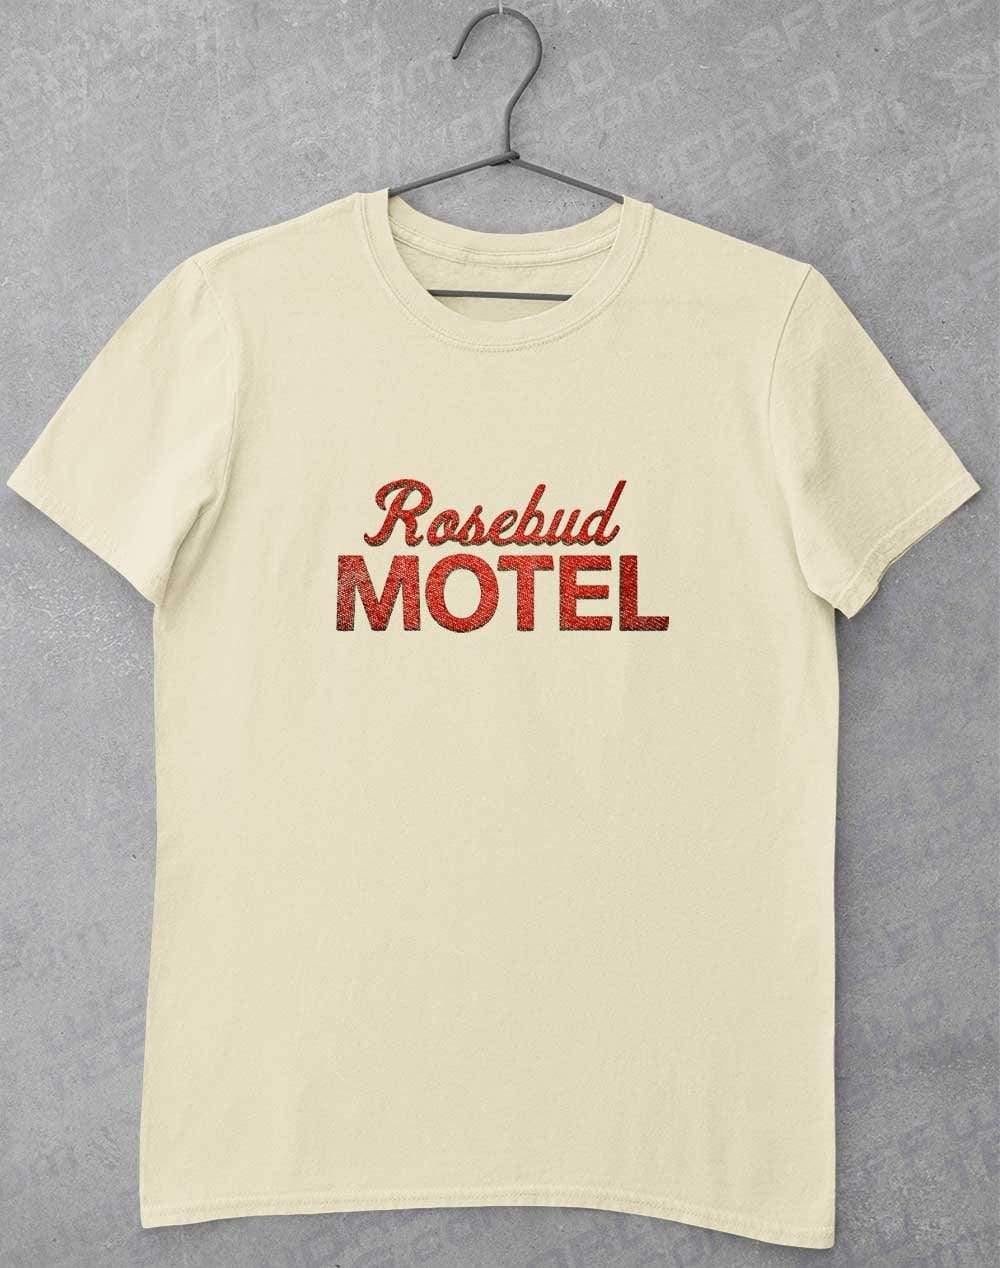 Rosebud Motel T-Shirt S / Natural  - Off World Tees